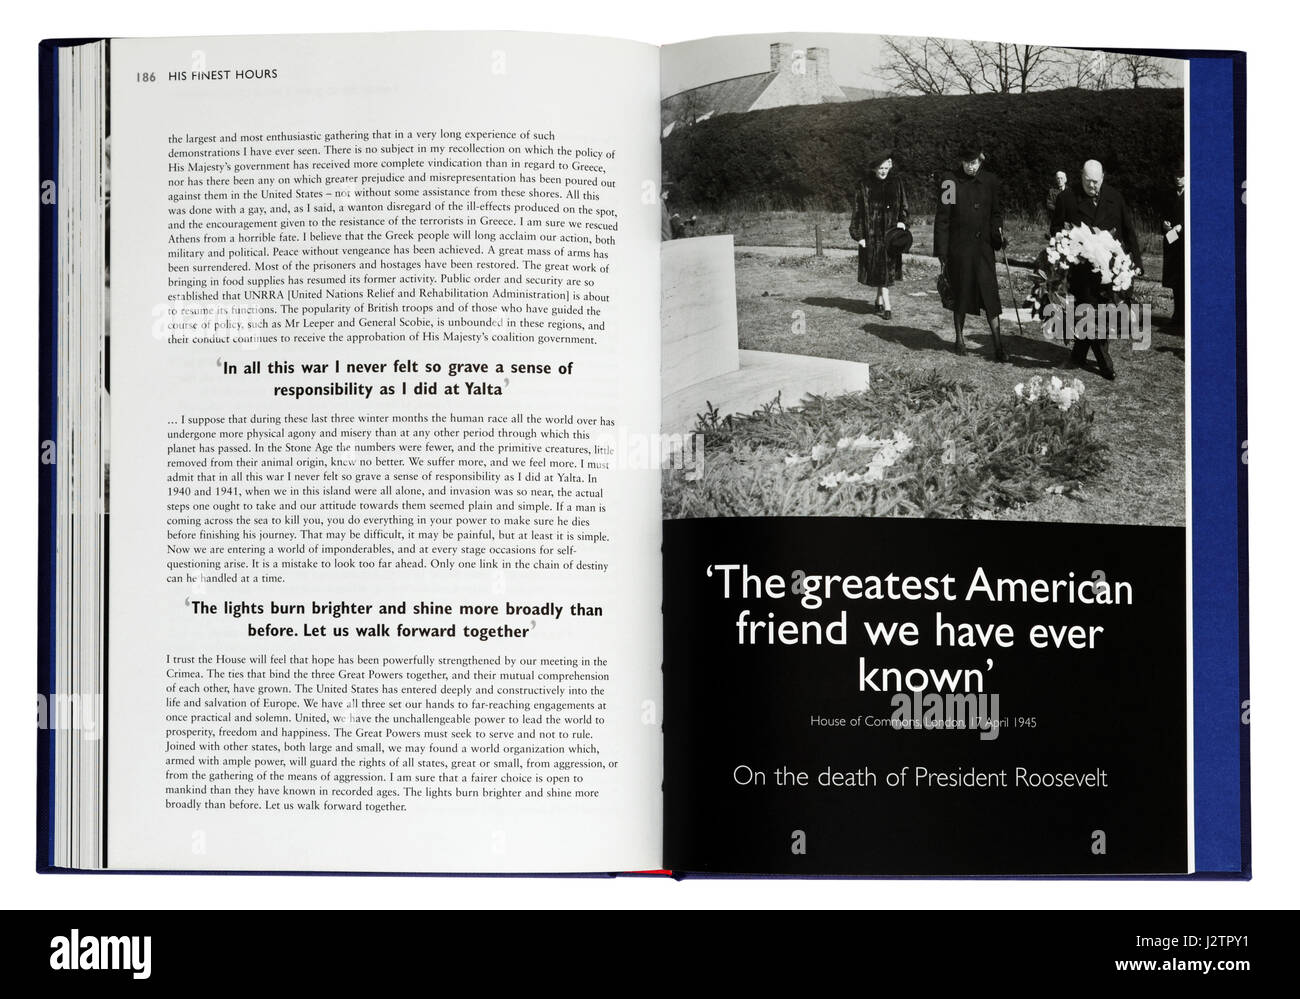 Il più grande amico americano che abbiamo mai conosciuto: una pagina di un libro illustrato di Winston Churchill i famosi discorsi di guerra Foto Stock